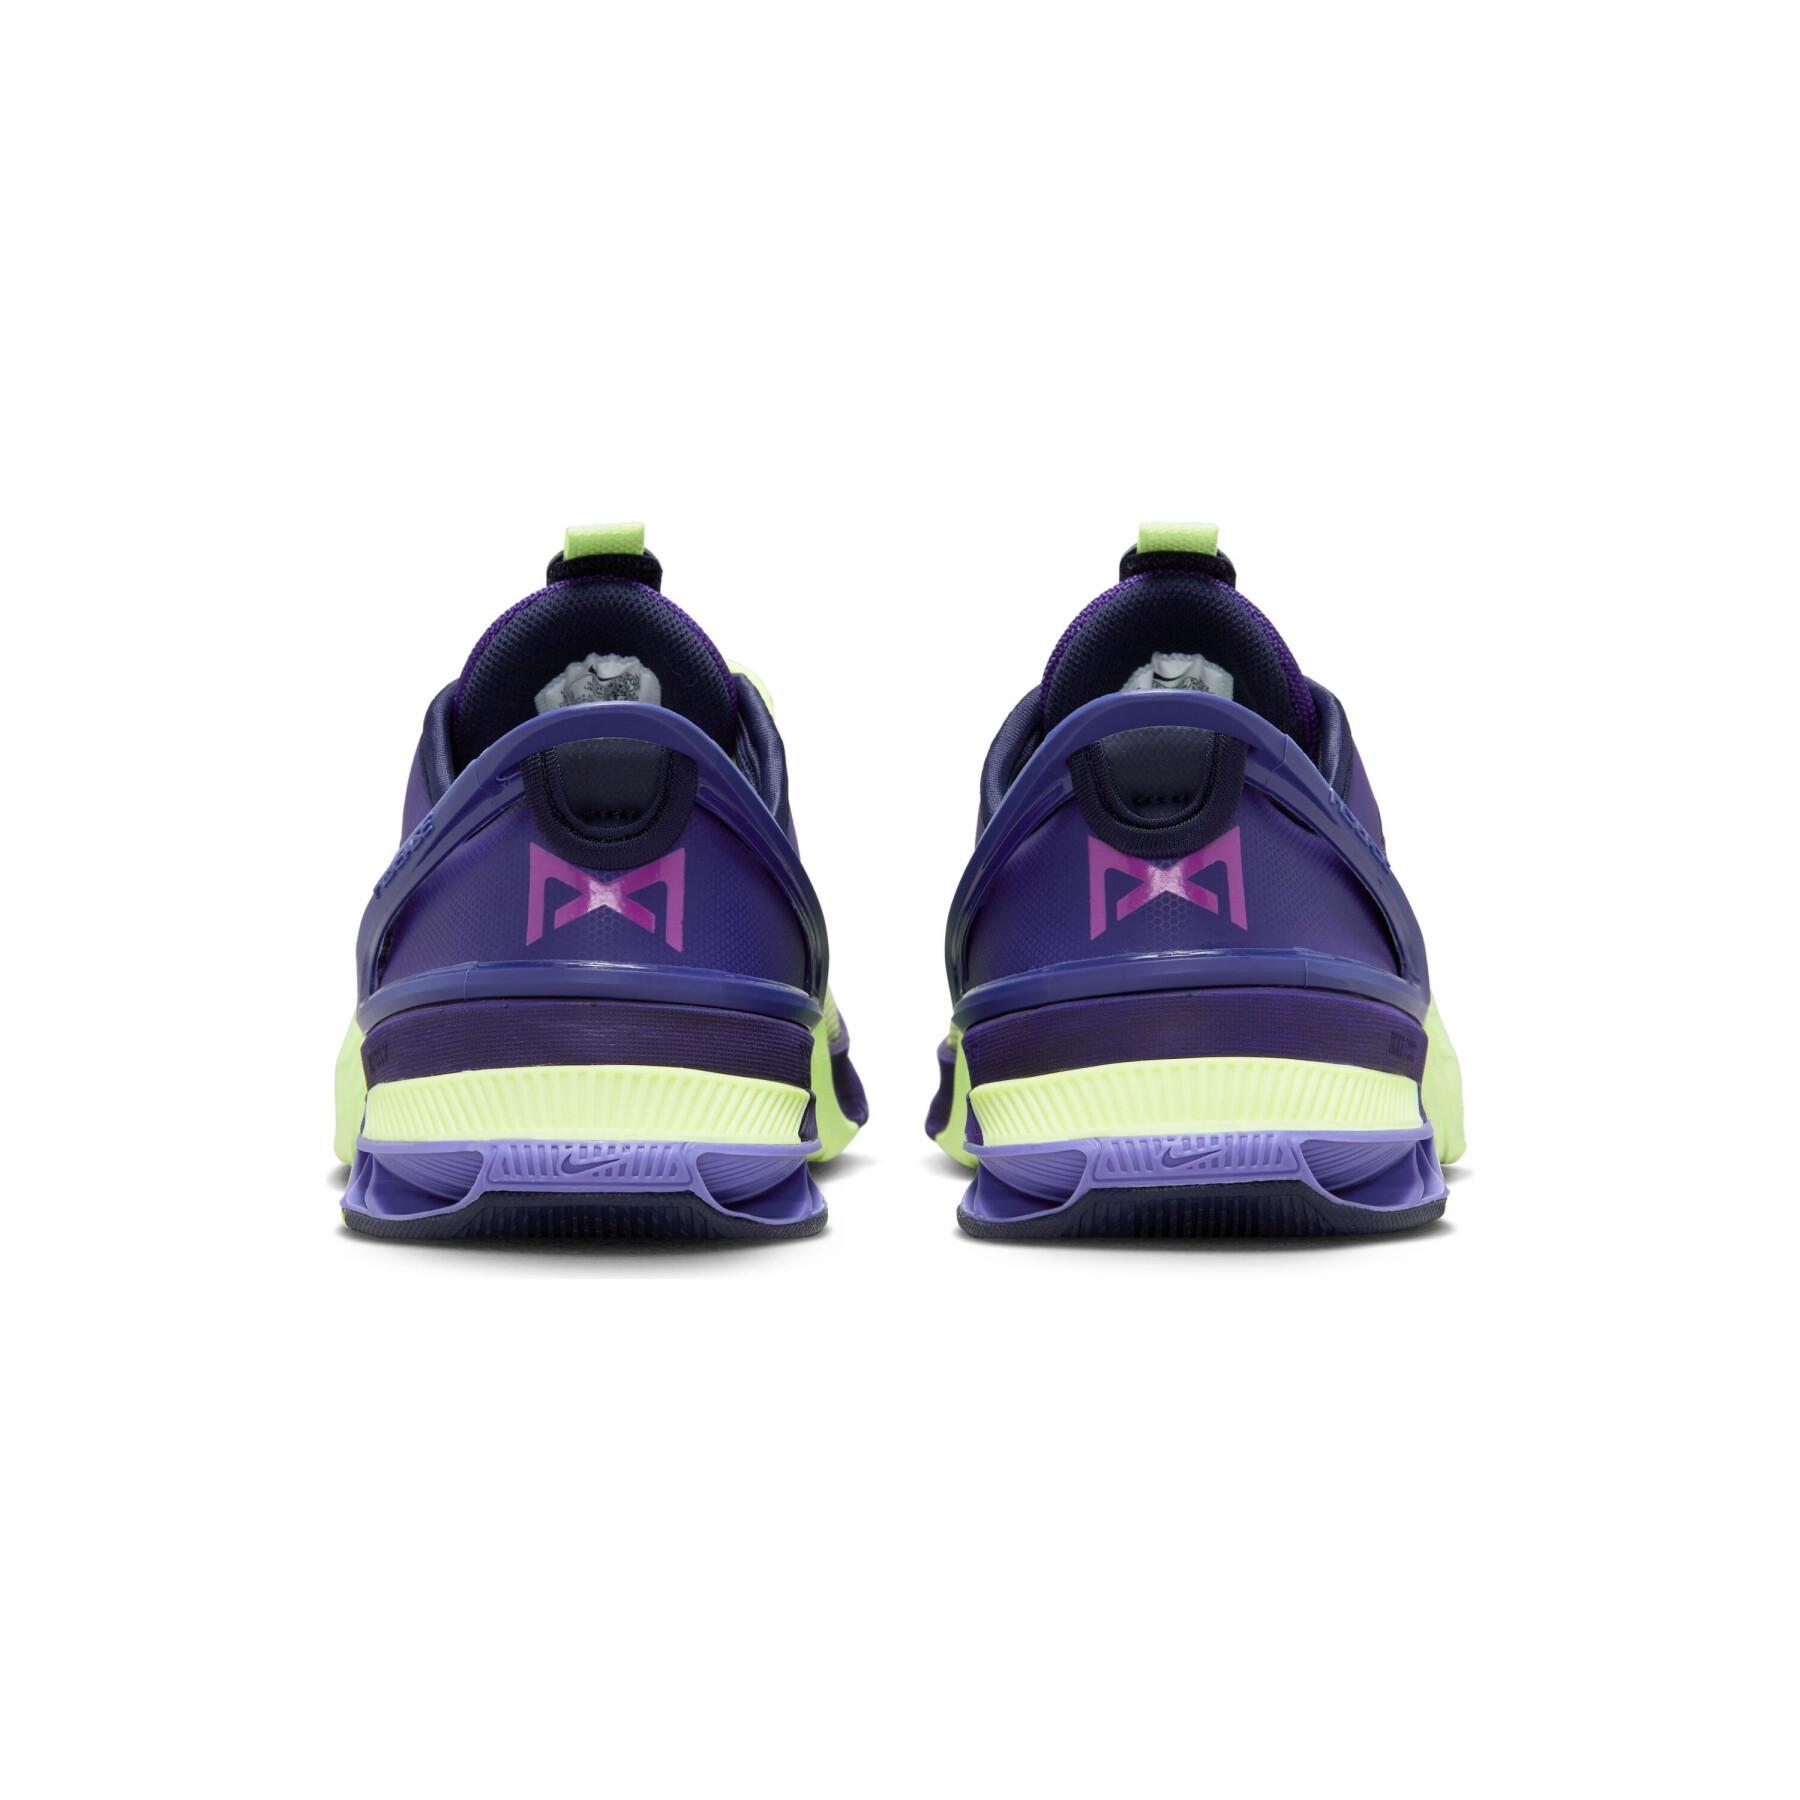 Sapatos de running Nike Metcon 8 FlyEase AMP